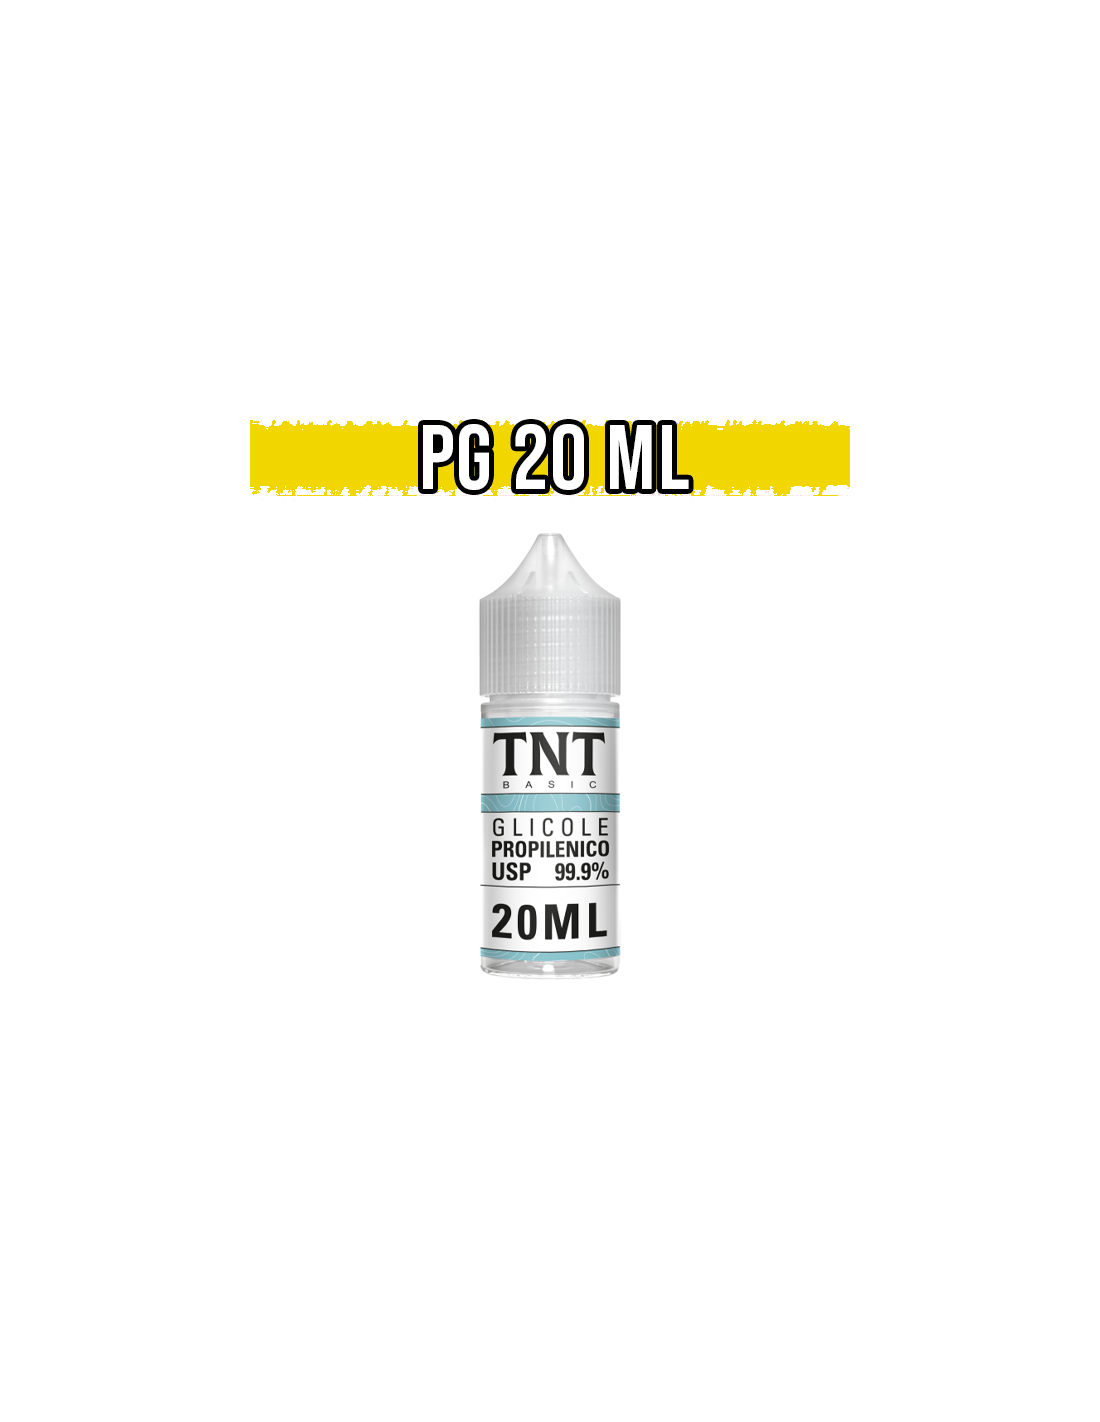 TNT Vape Glicole Propilenico 20ml Full Pg